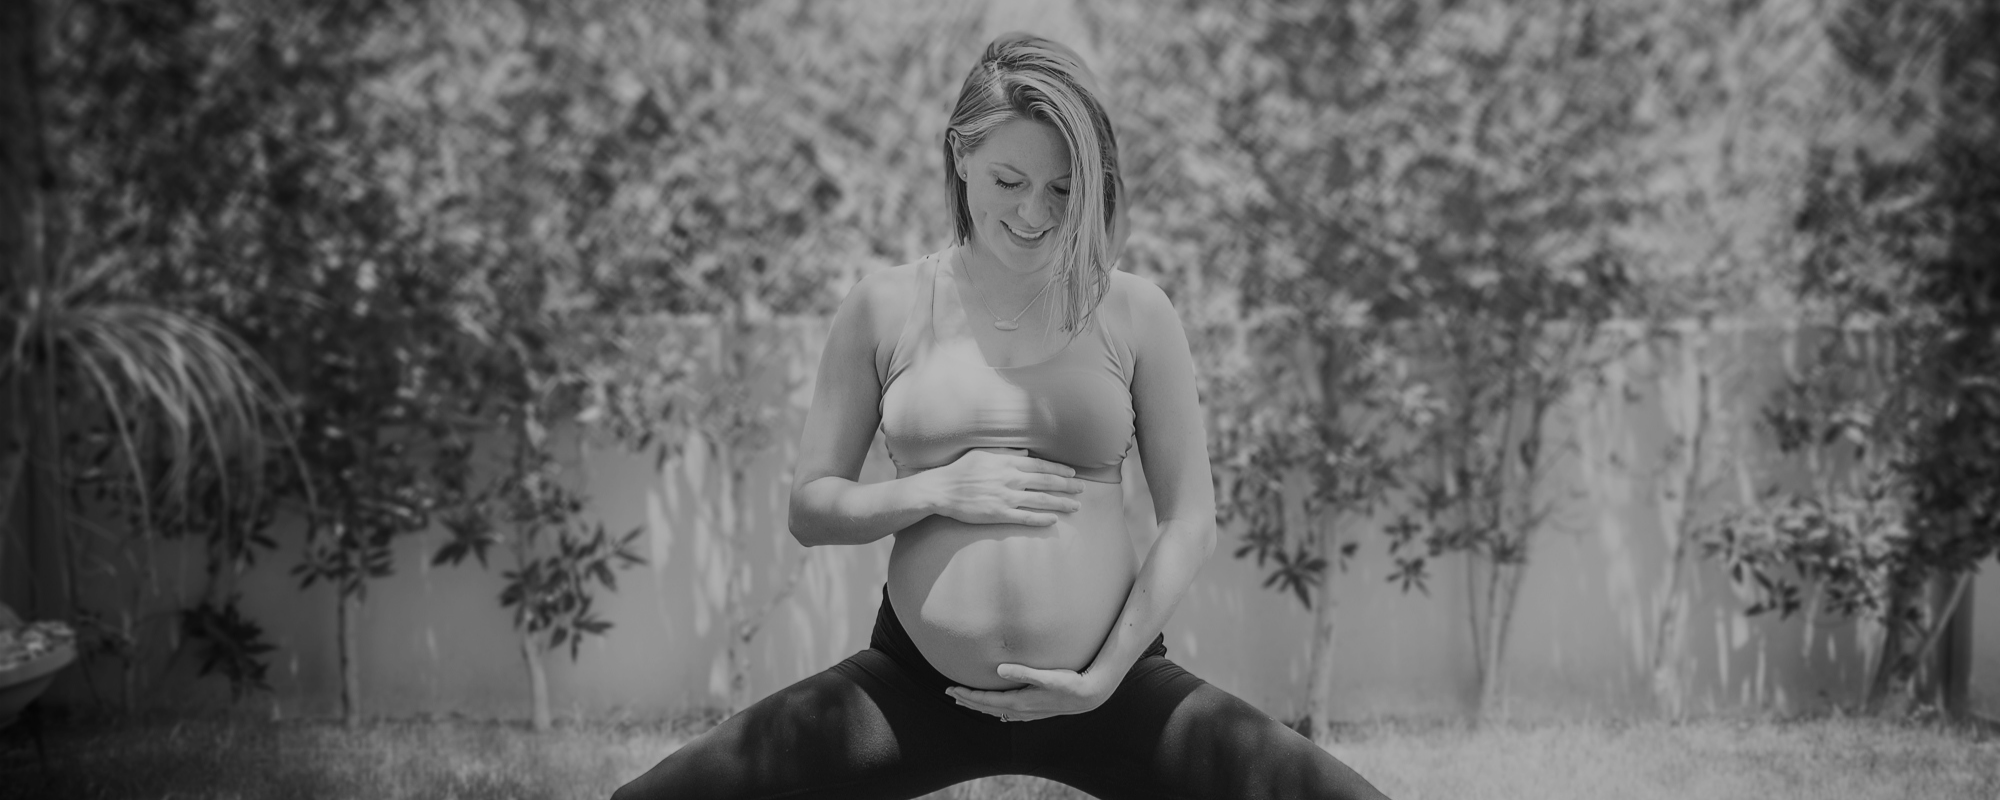 prenatal yoga picture